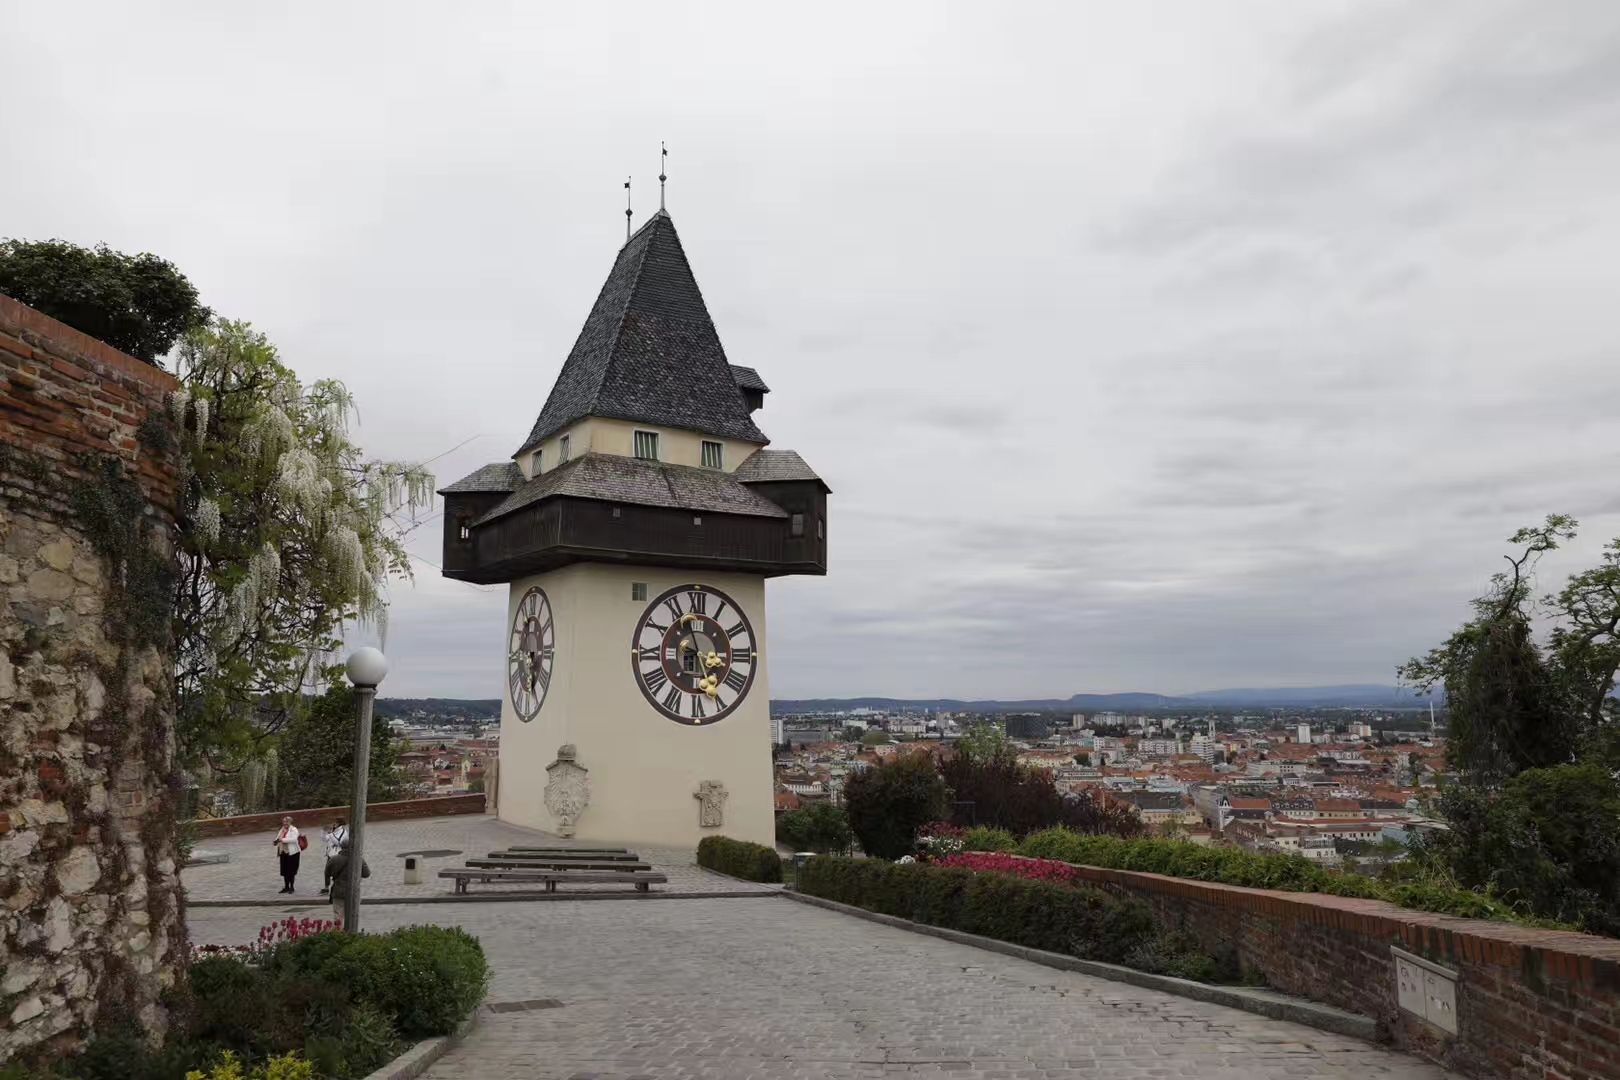 奥地利格拉茨 格拉茨，这座文艺复兴的城市是中欧保护最完善的古城。城中受到意大利风格影响的建筑，洋溢着